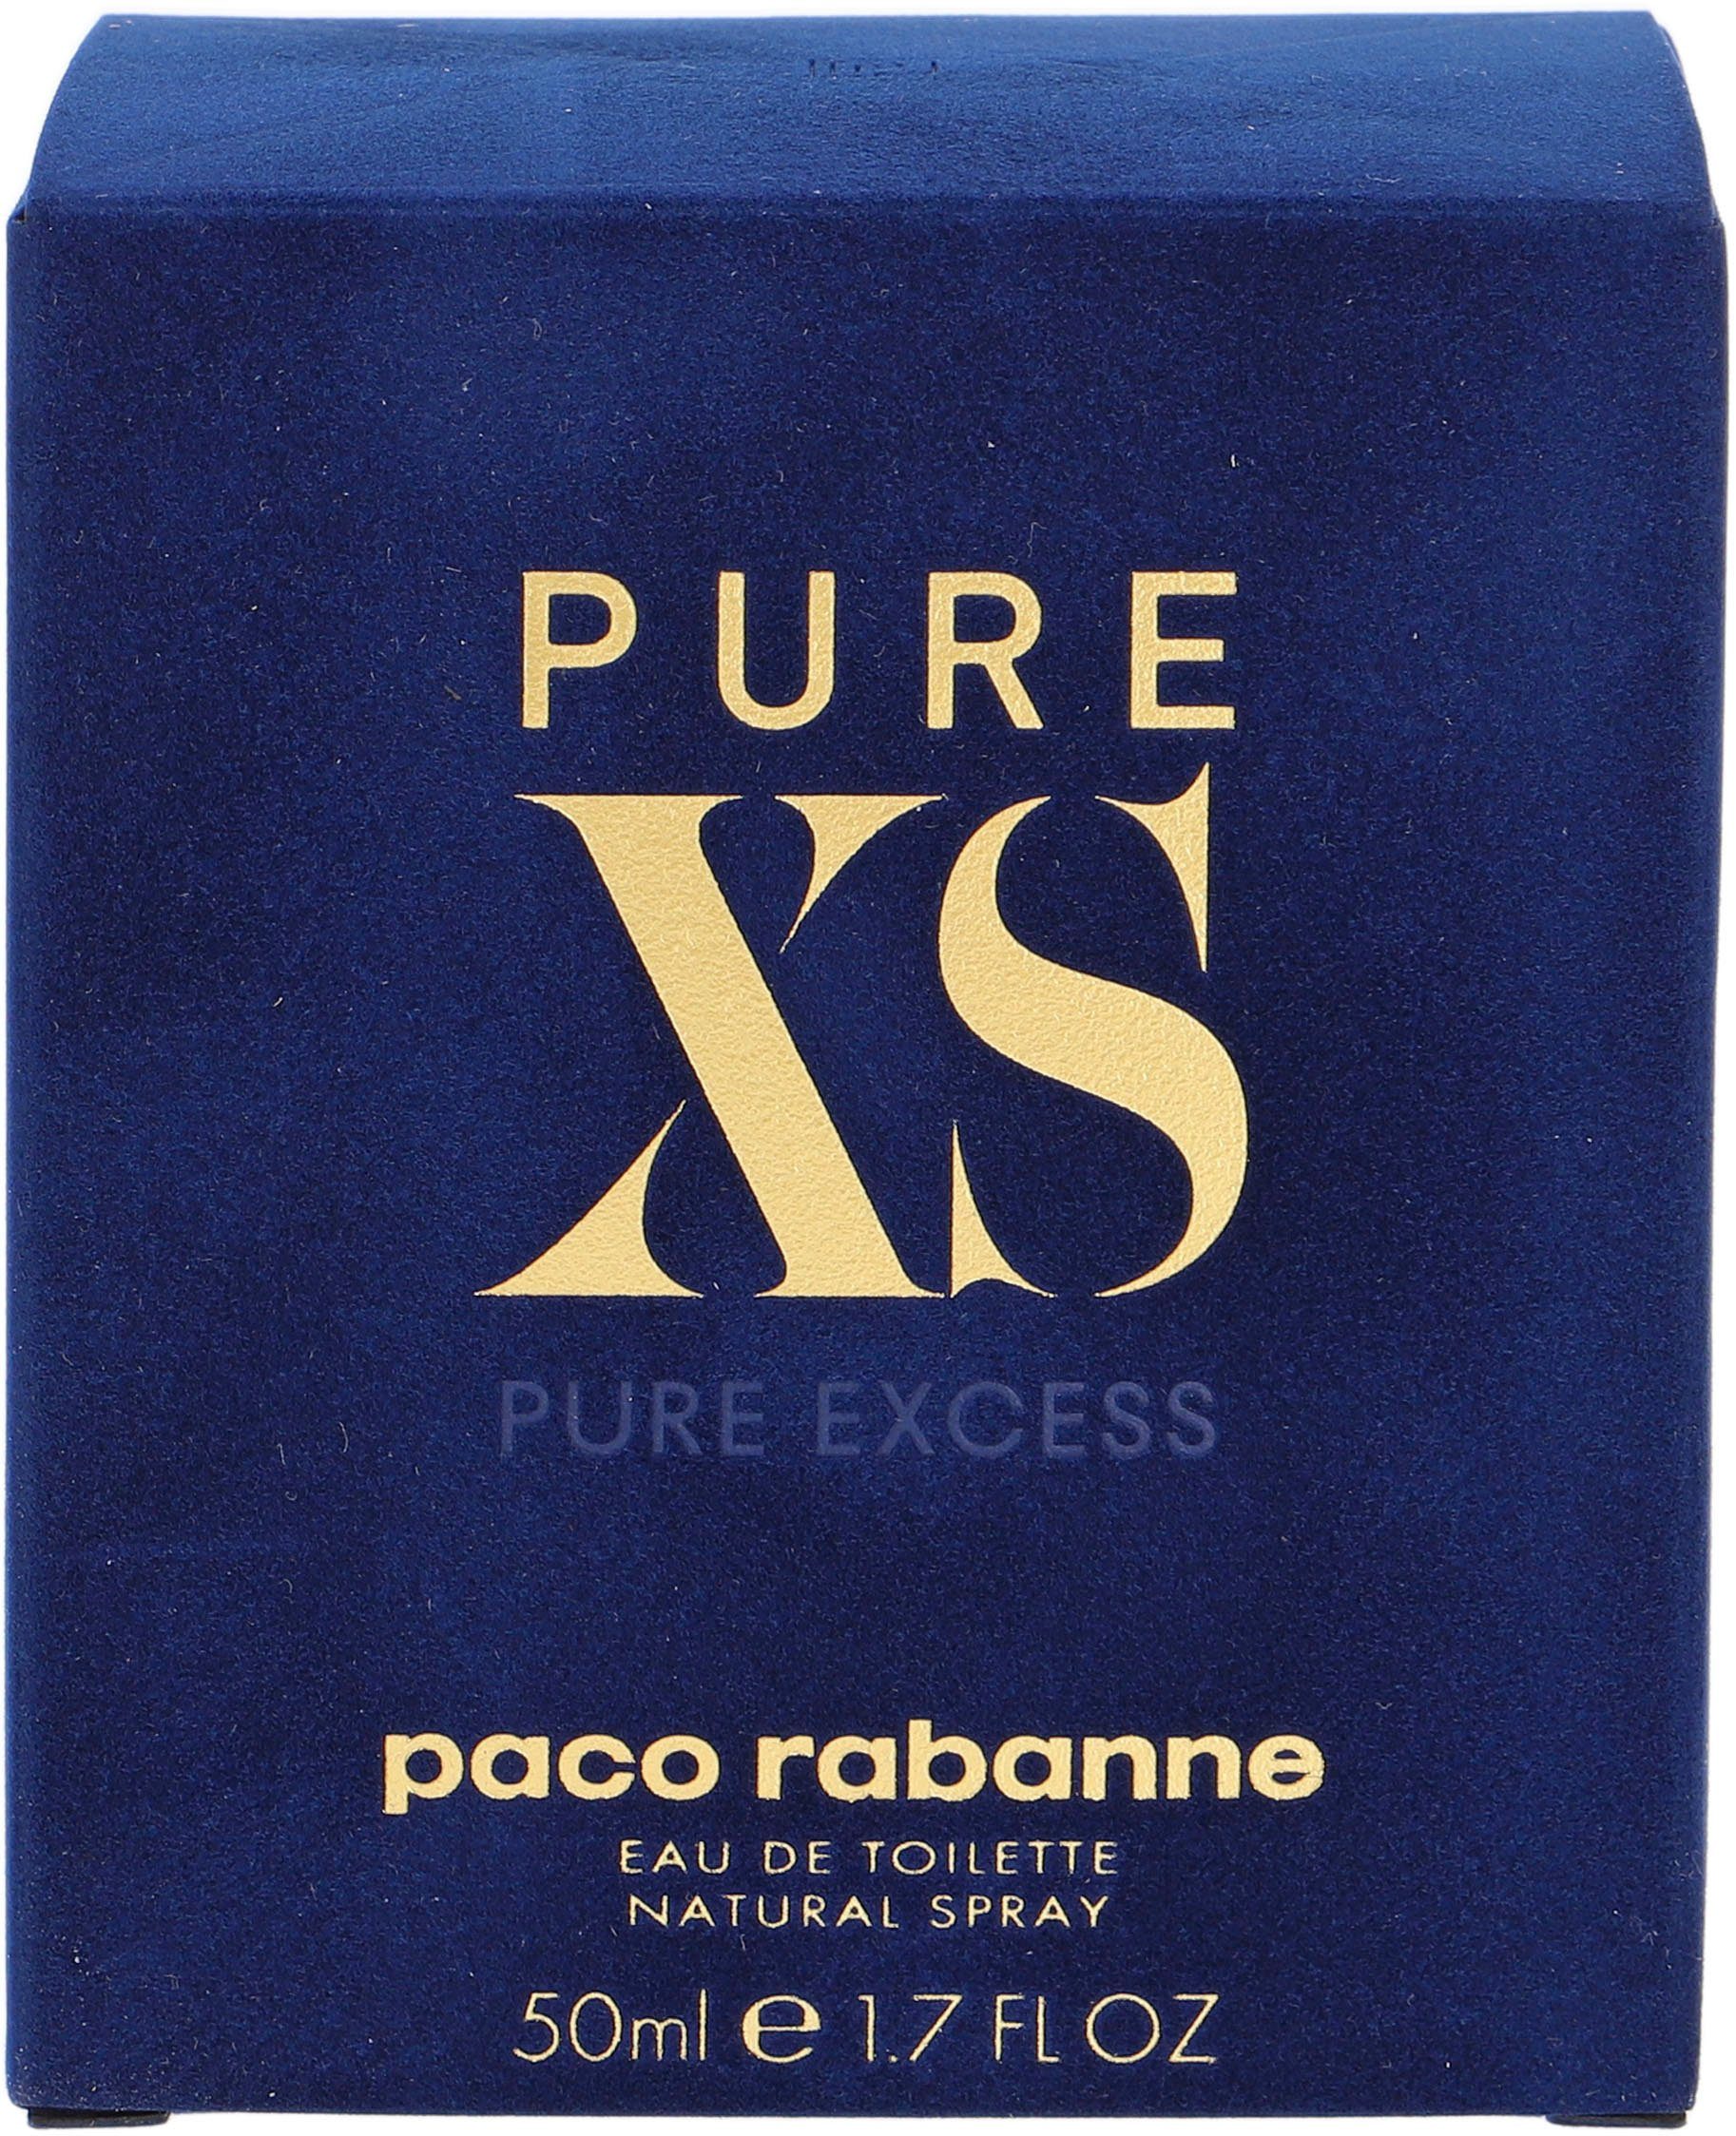 Rabanne Eau Paco rabanne Toilette XS de Pure paco